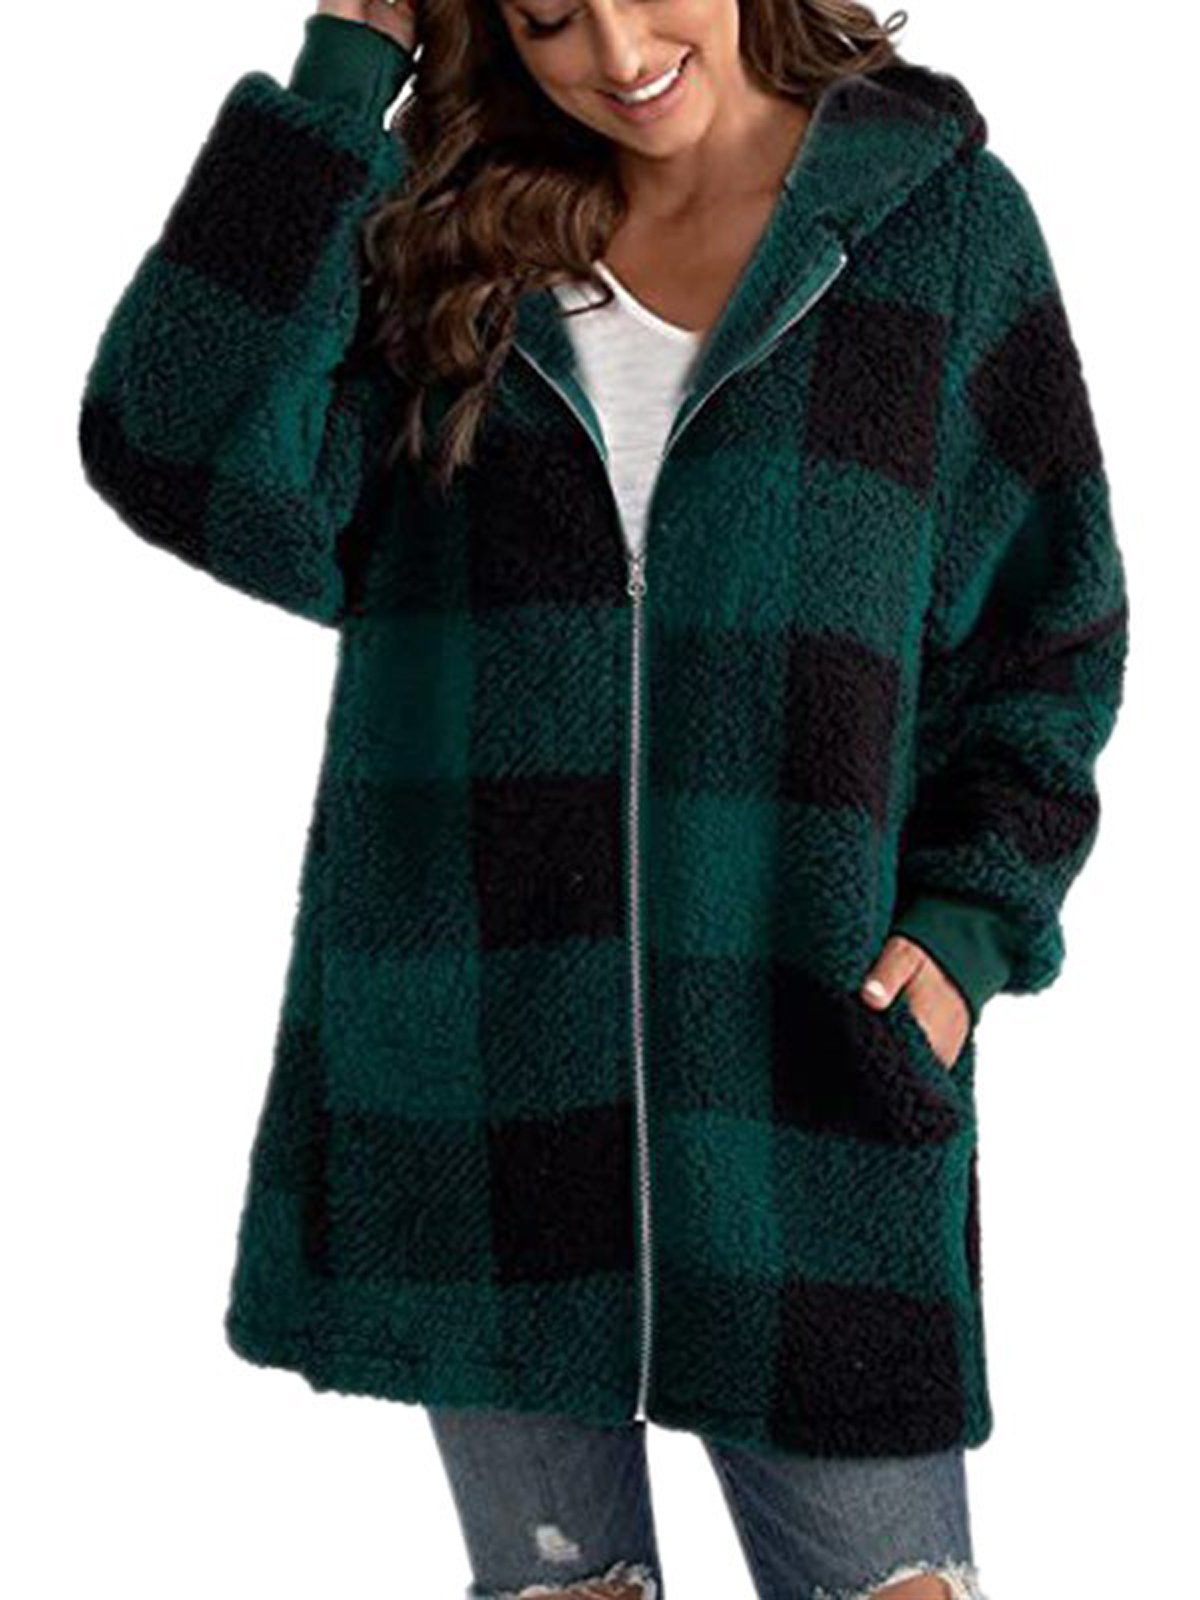 Women's Fleece Jacket Warm Sherpa Jacket with Pocket Plaid Teddy Coat Turndown Plush Casual Street Outerwear Long Sleeve Fall Winter